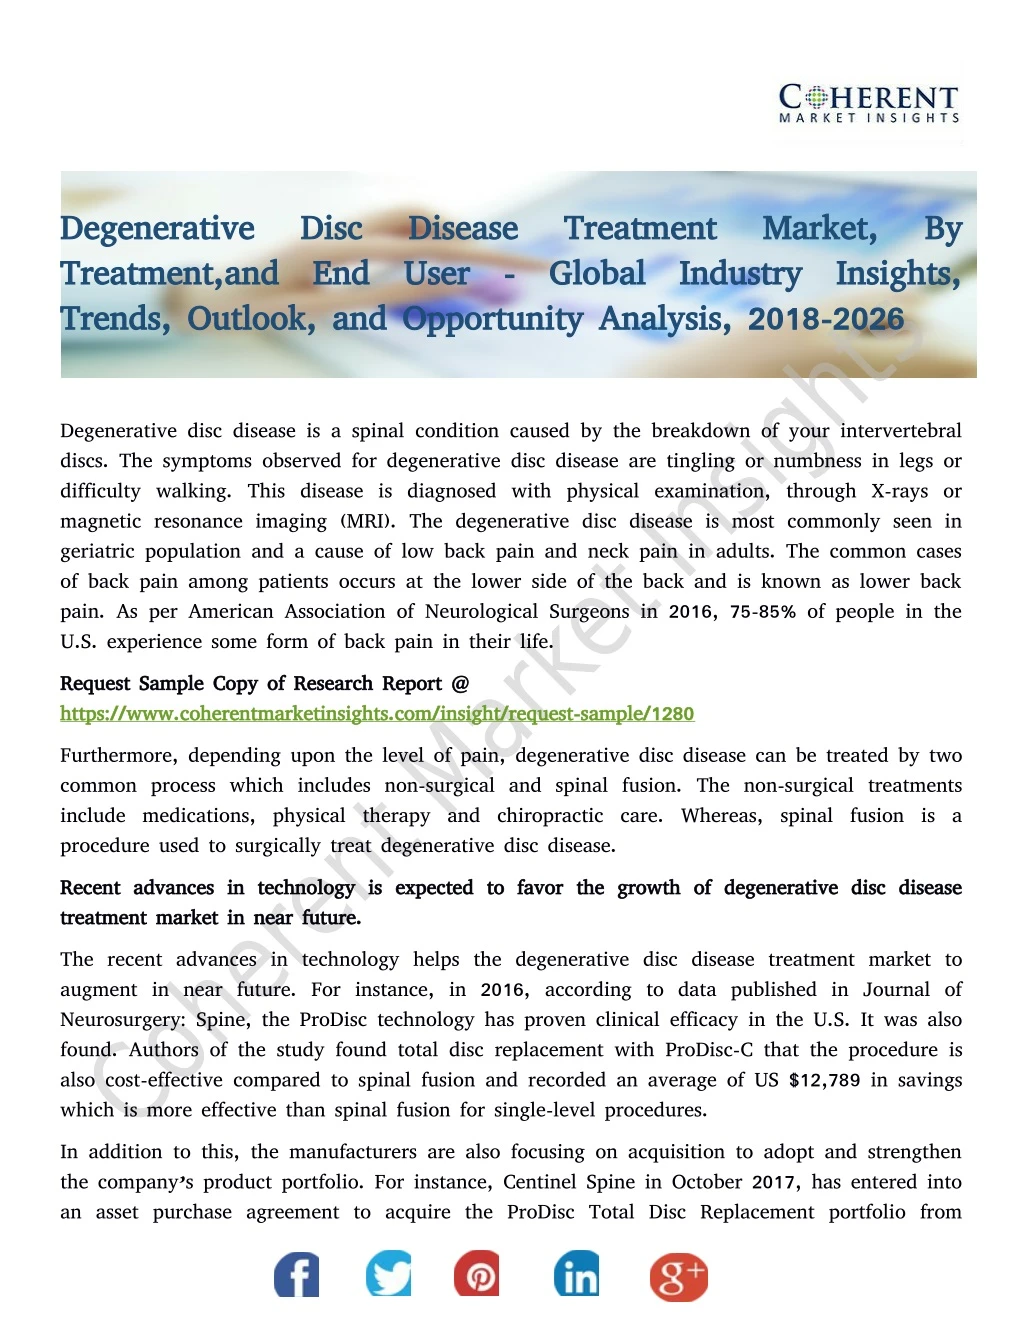 degenerative disc disease treatment market